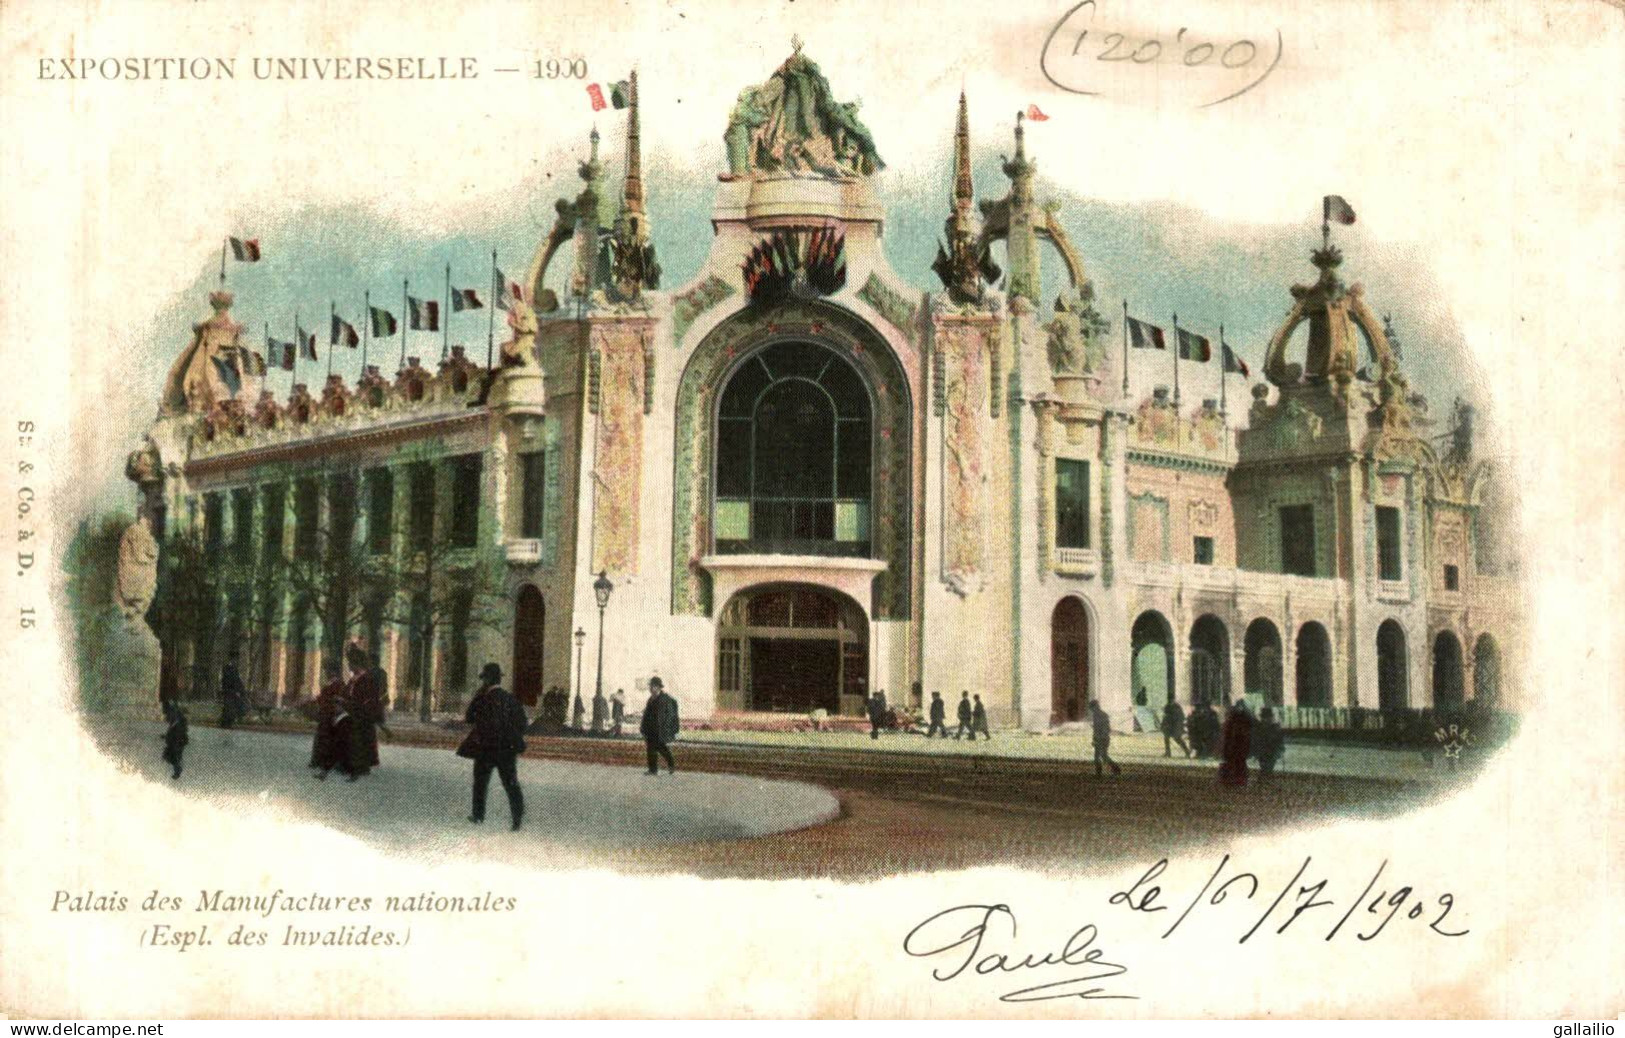 EXPOSITION PARIS 1900 PALAIS DES MANUFACTURES NATIONALES - Exhibitions